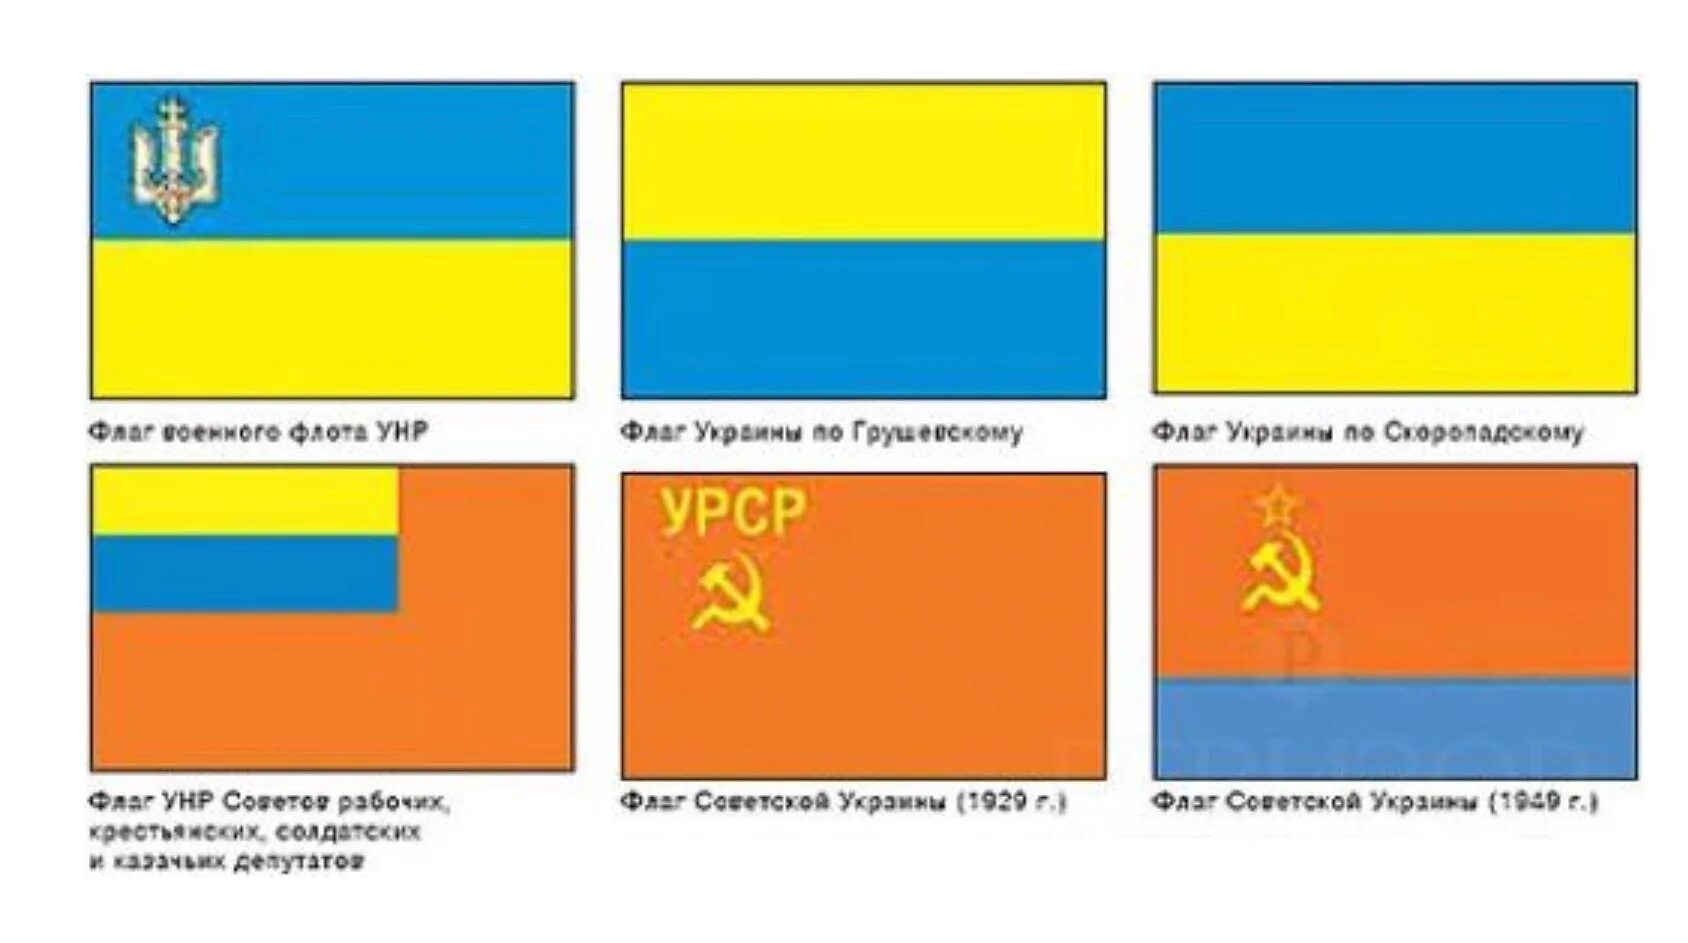 Желто-голубой флаг УНР. Флаг Украины до 1917 года. Флаг Украины до революции 1917 года. Жёлто-синий флаг УНР.